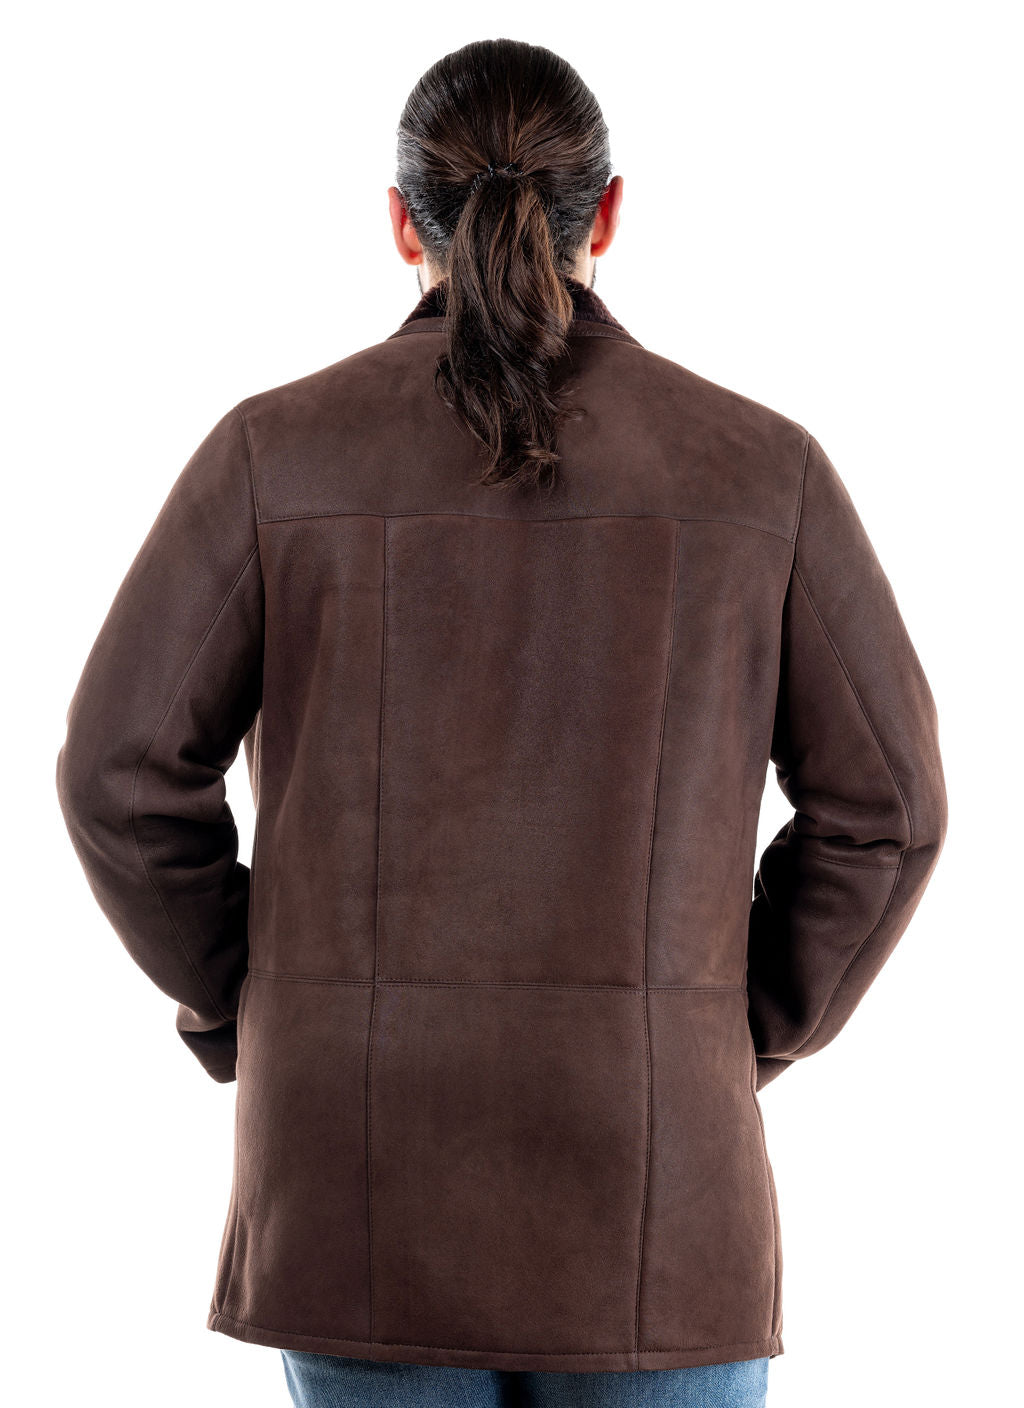 Artek Sheepskin Coat, Brown